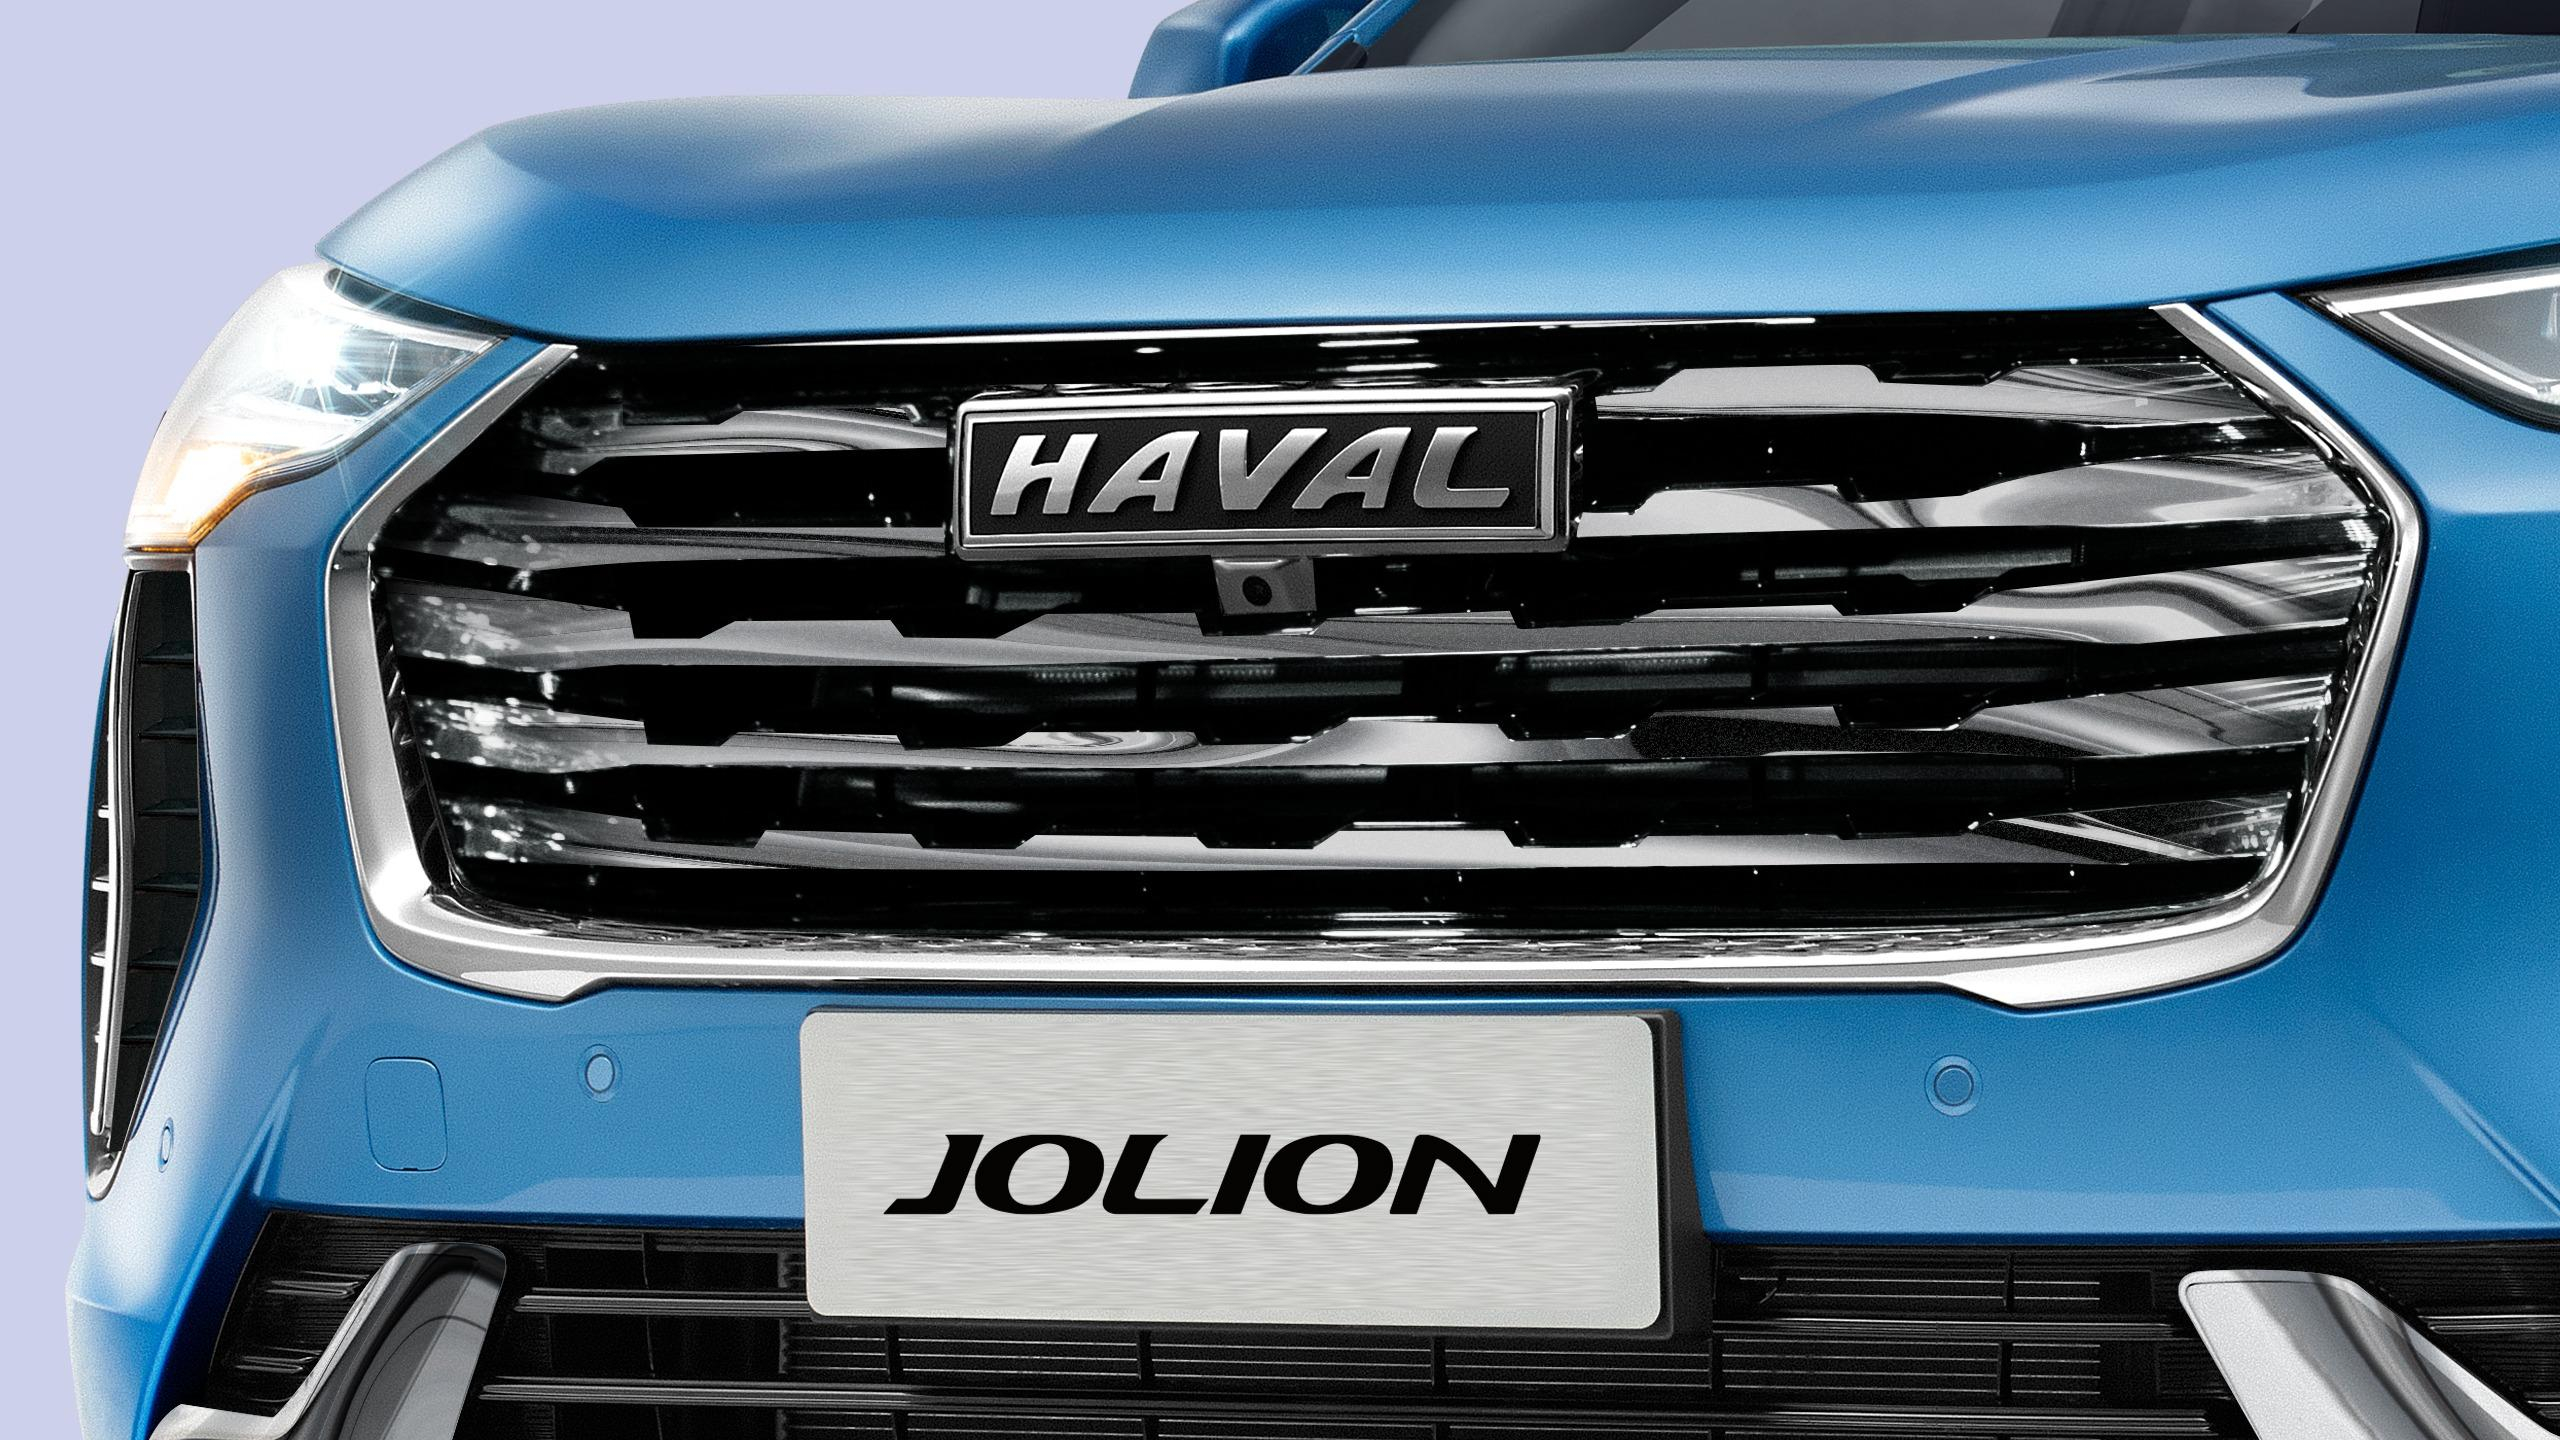 Самой продаваемой моделью Haval стал кроссовер Jolion